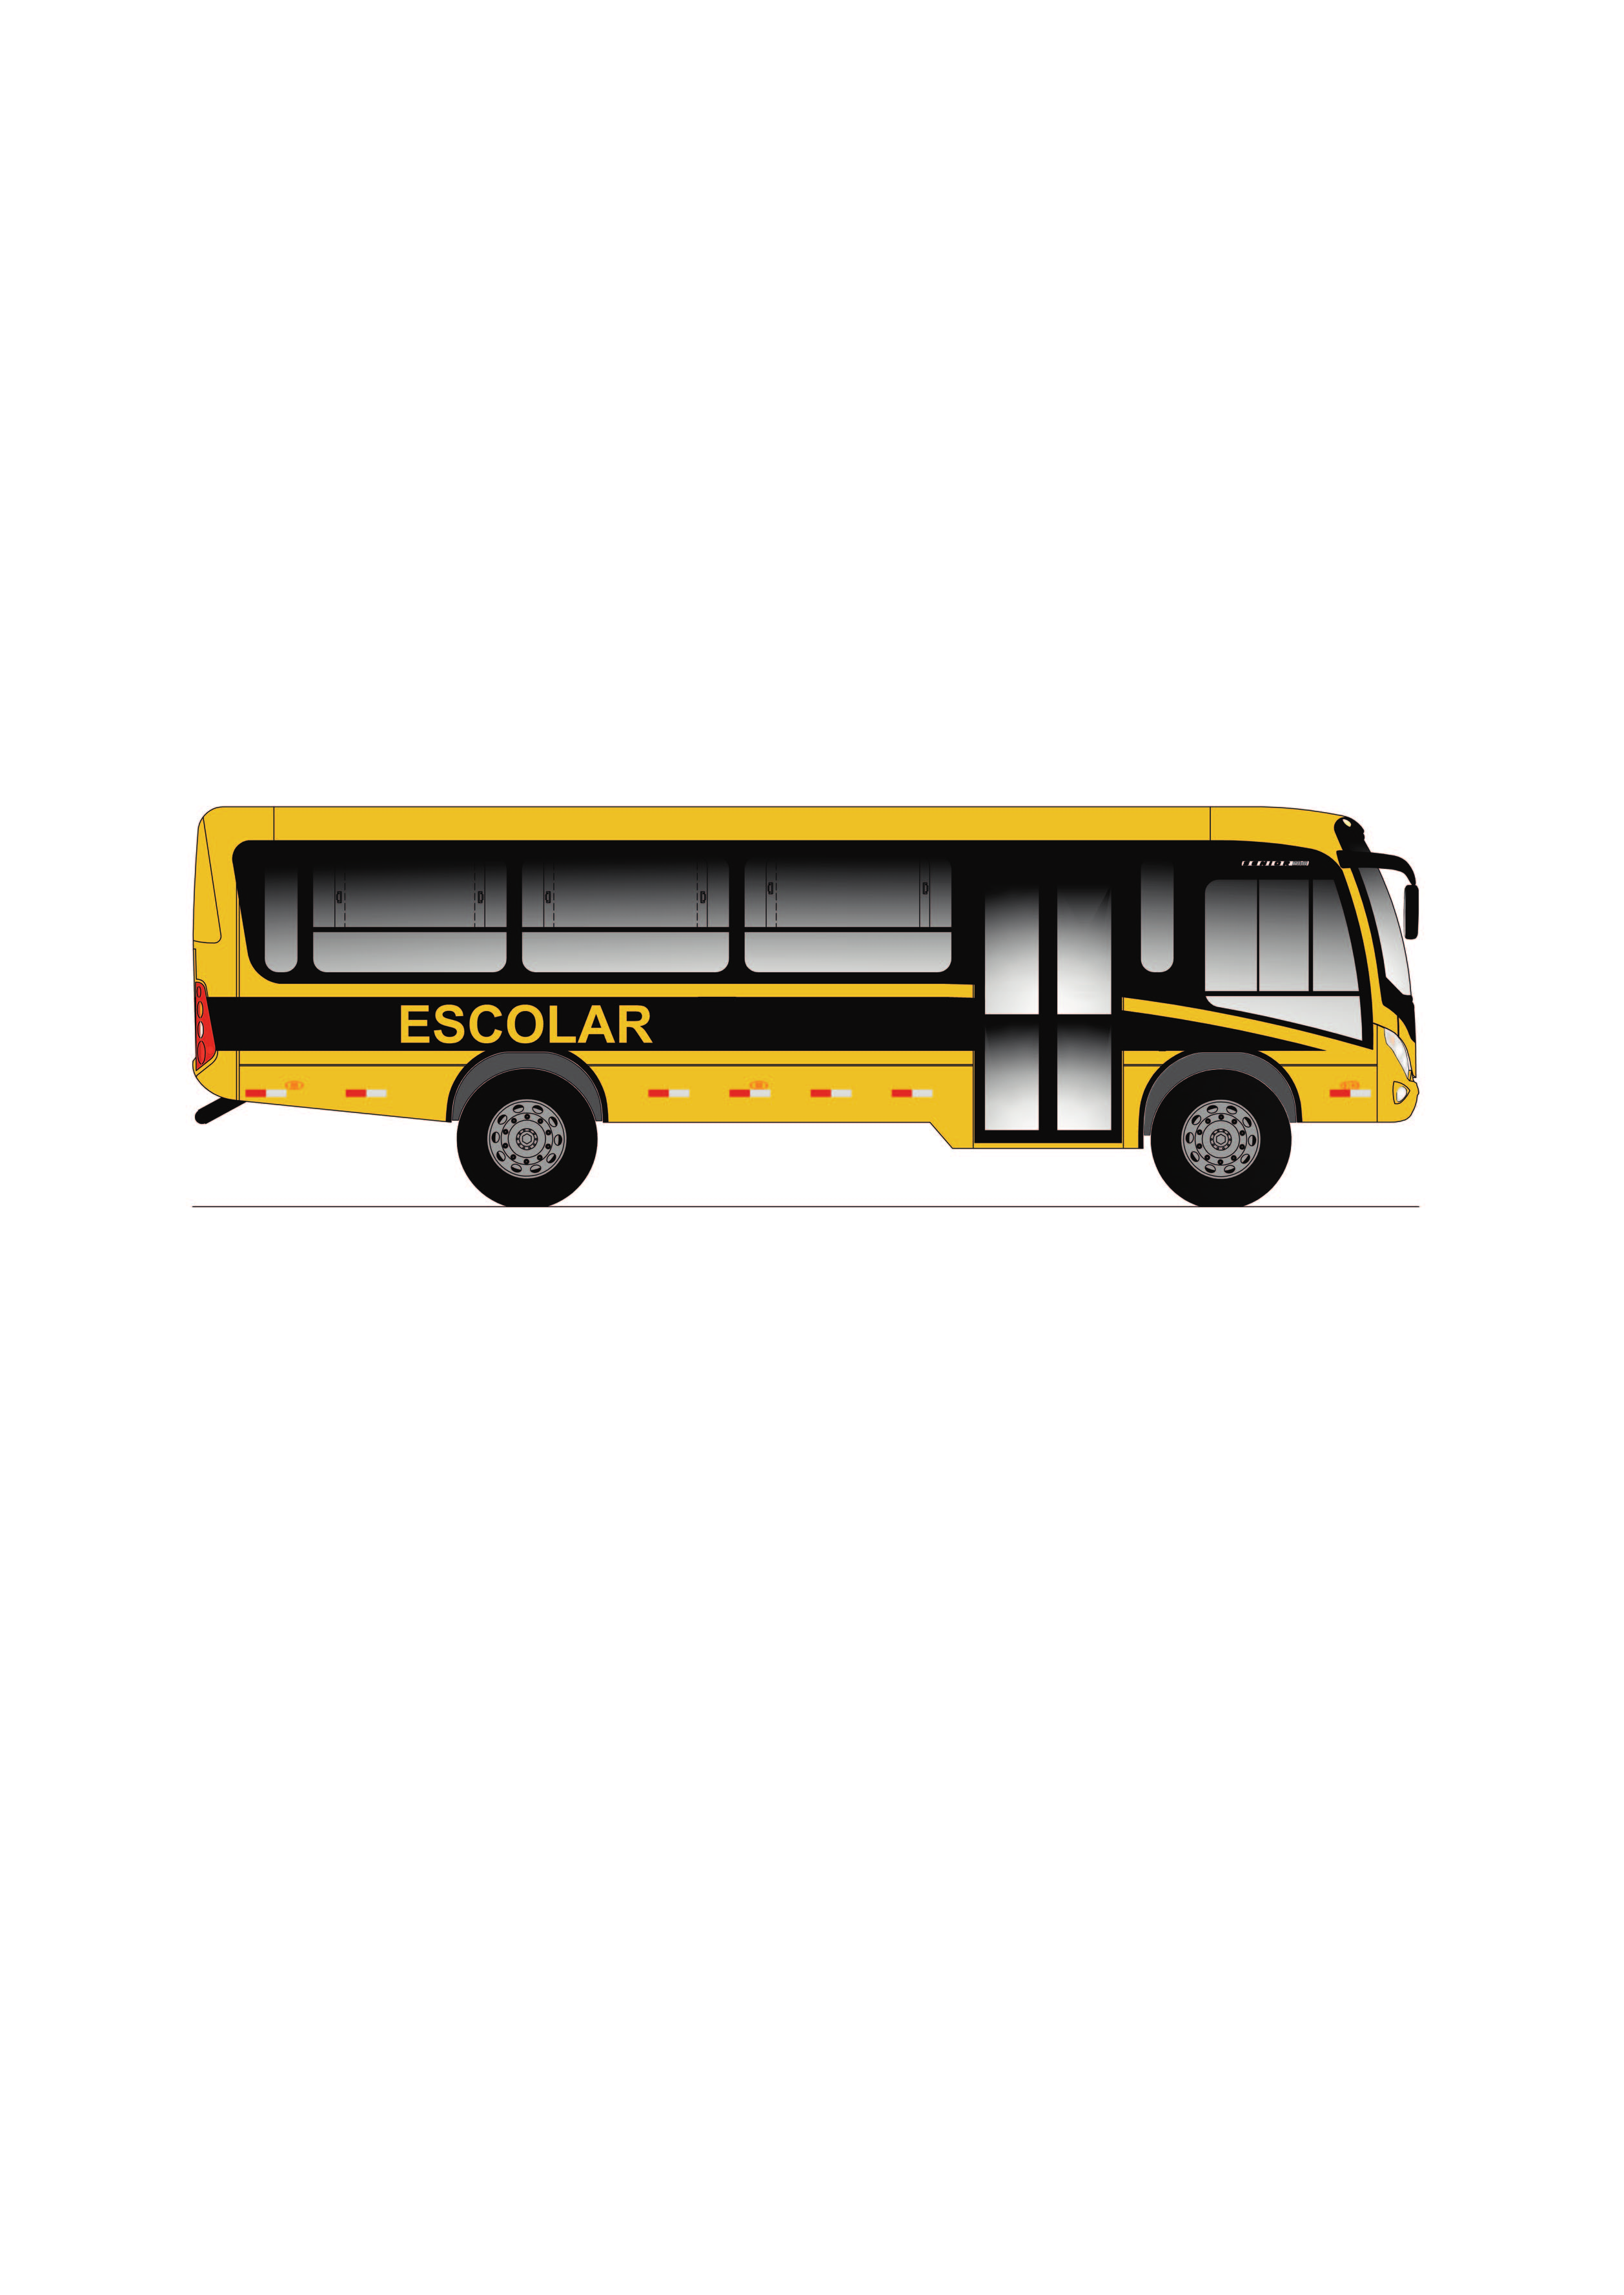 ORE 02R Ônibus Rural Escolar Reforçado Médio Modelo do anexo 1 Médio porte, até 48 alunos sentados Utiliza chassi com suspensão reforçada e redução de balanço dianteiro e traseiro, permitindo acesso